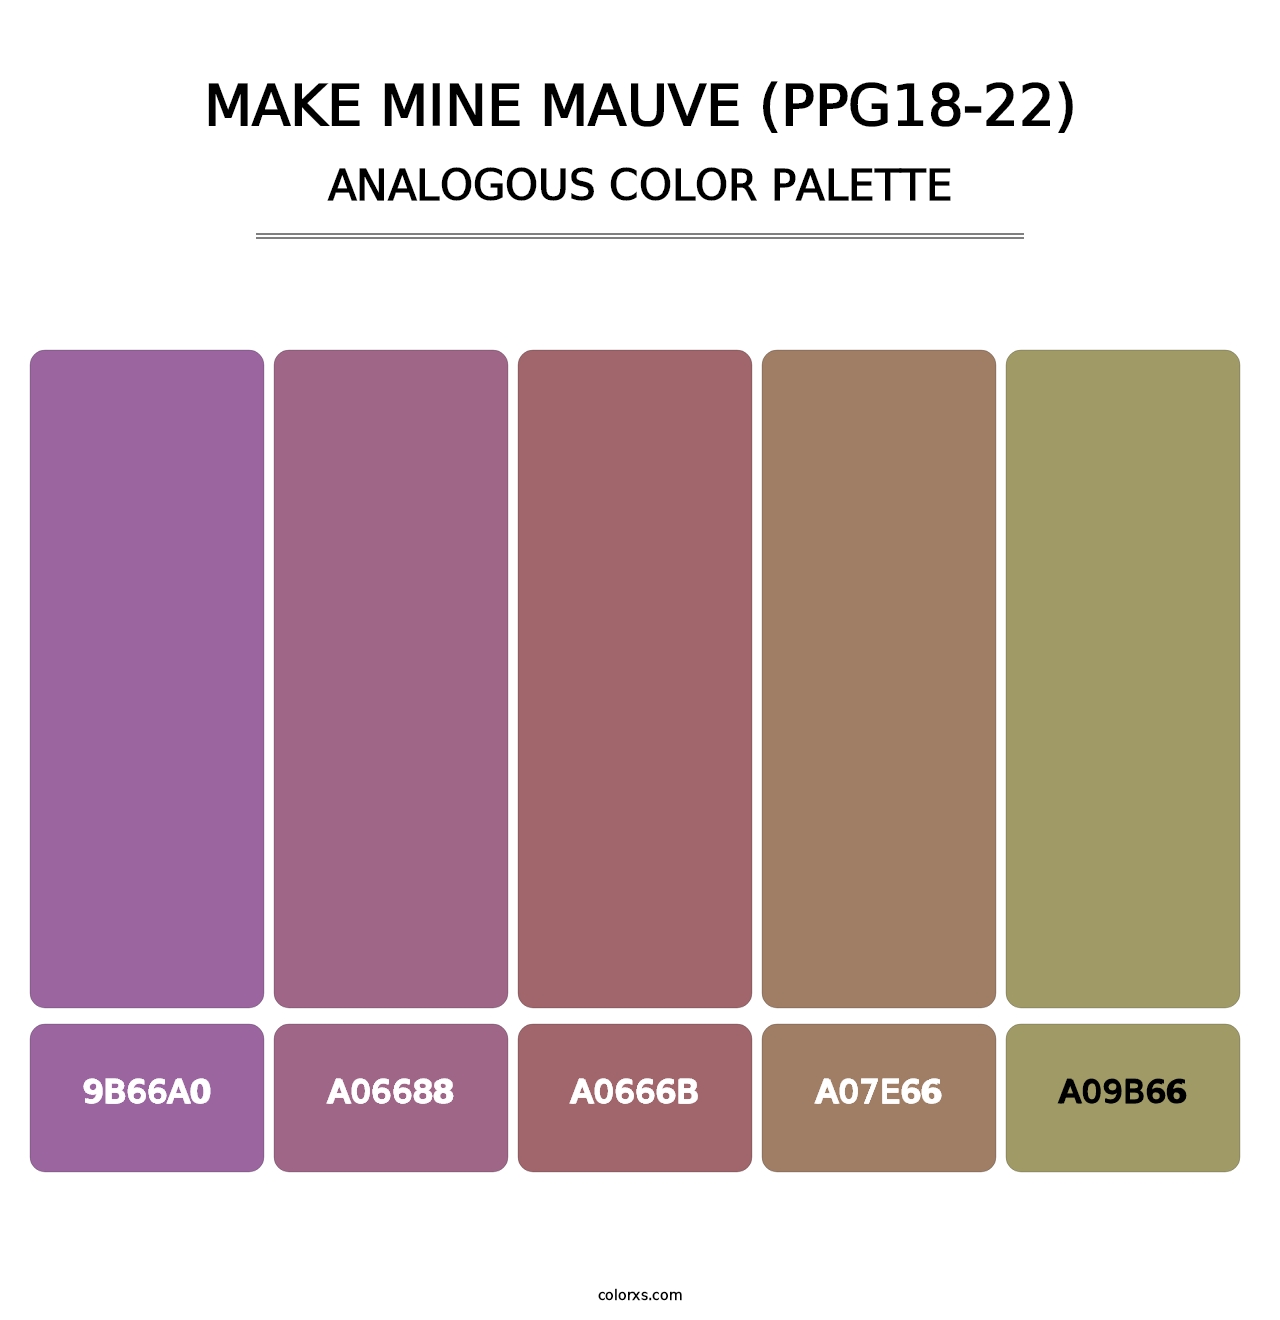 Make Mine Mauve (PPG18-22) - Analogous Color Palette